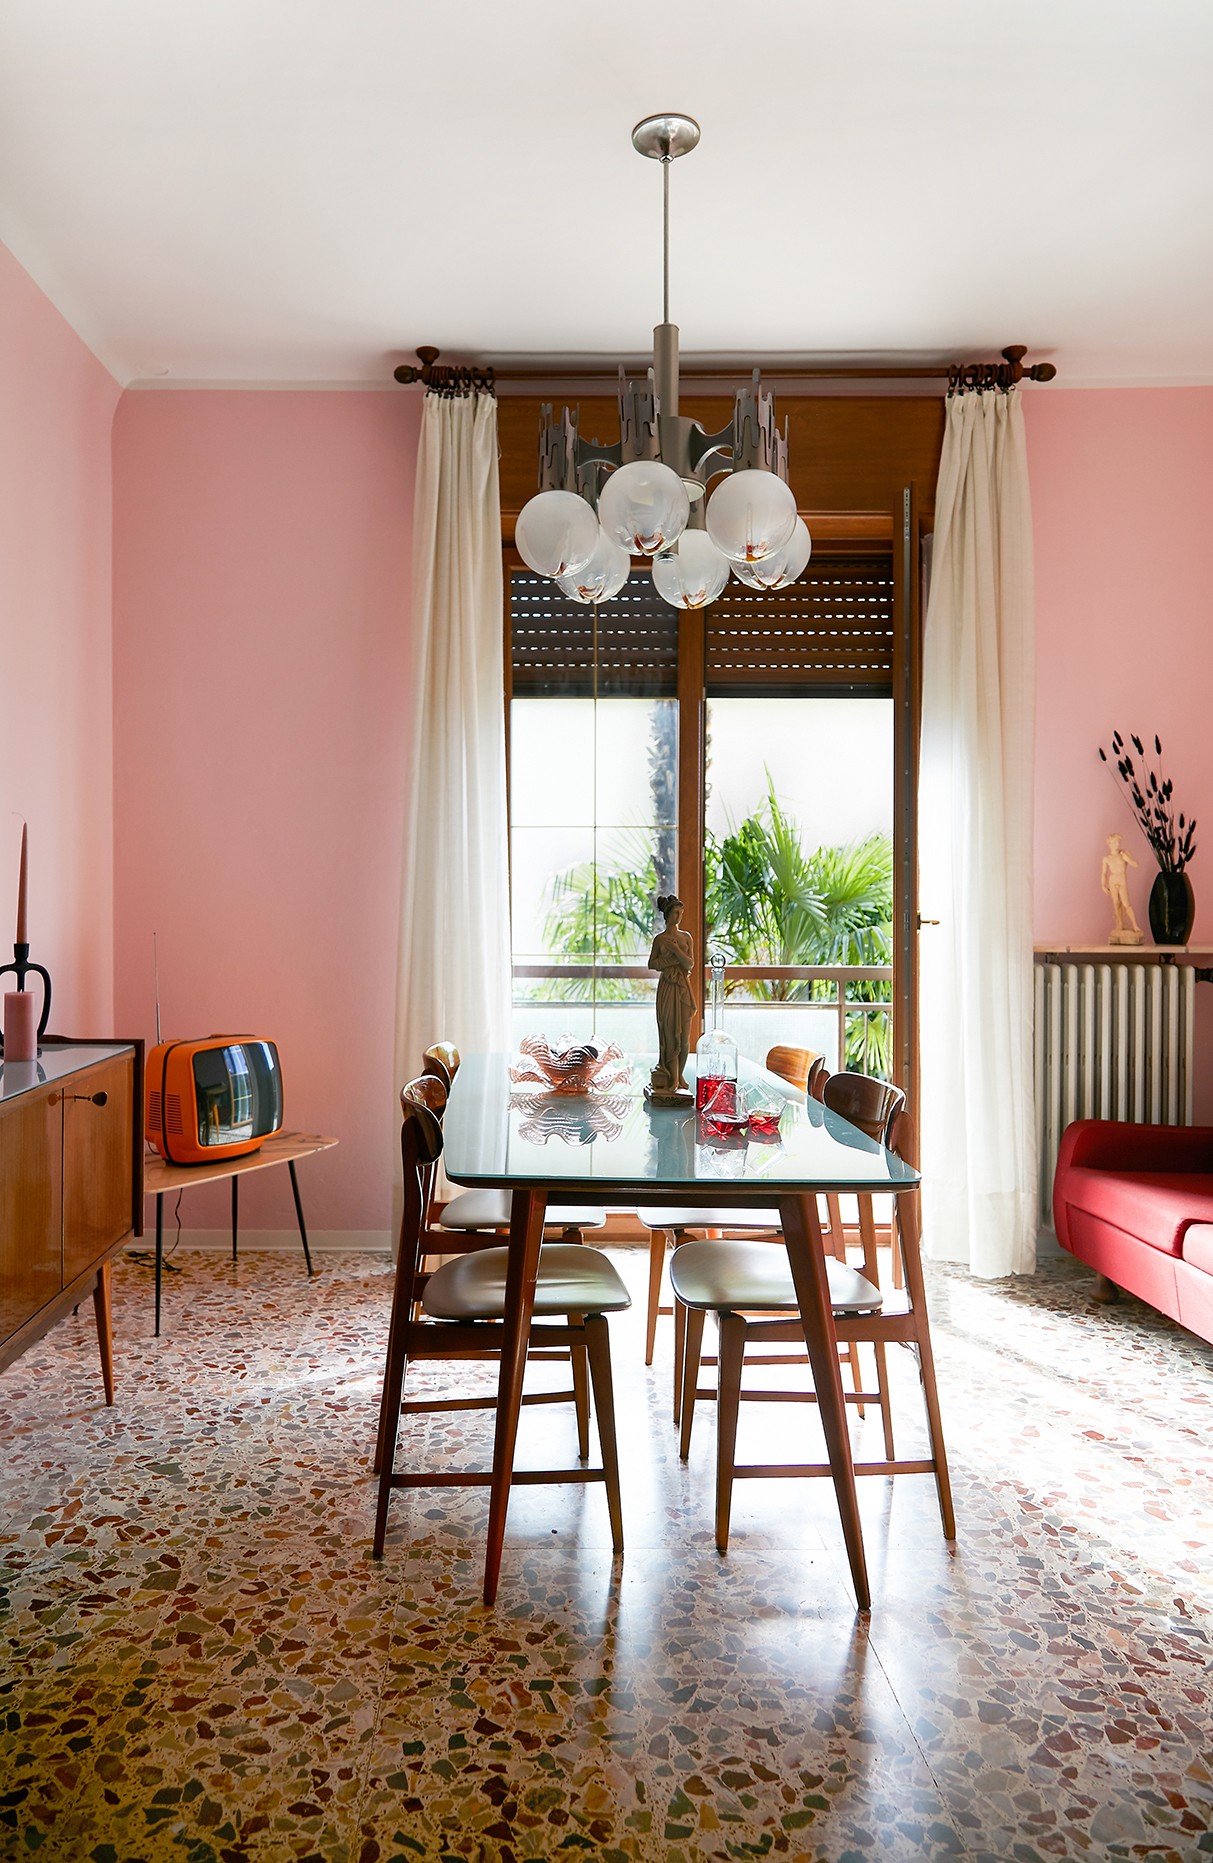 Décor do dia: living rosa com piso de granilite e decoração retrô   (Foto: Aude Lerin )